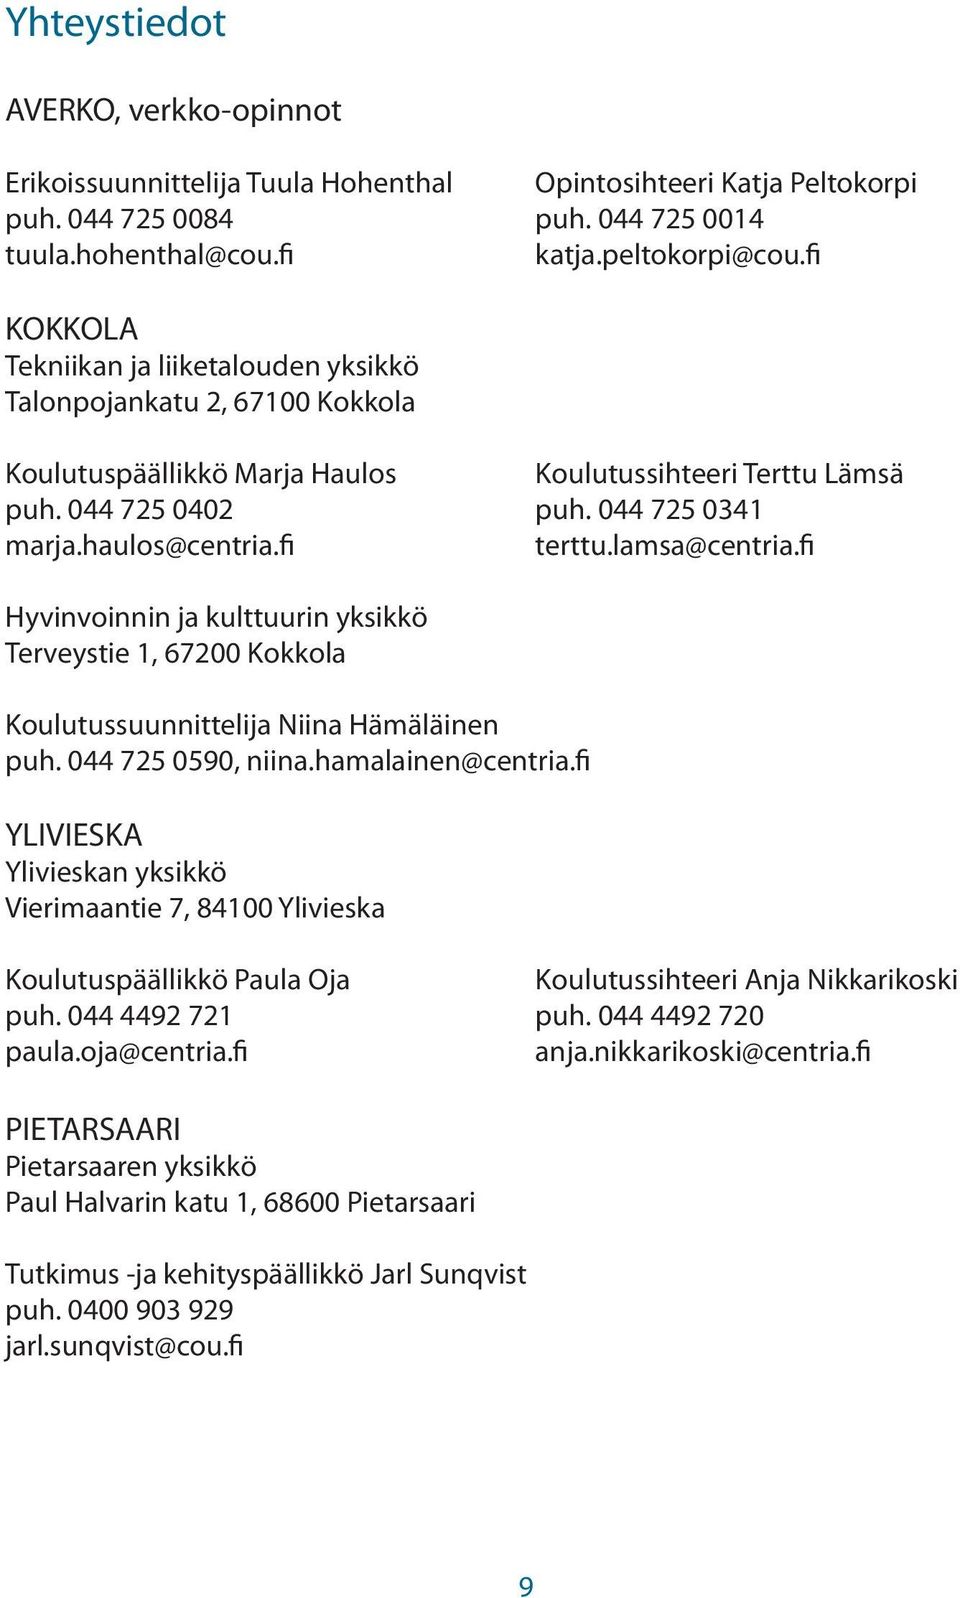 fi terttu.lamsa@centria.fi Hyvinvoinnin ja kulttuurin yksikkö Terveystie 1, 67200 Kokkola Koulutussuunnittelija Niina Hämäläinen puh. 044 725 0590, niina.hamalainen@centria.